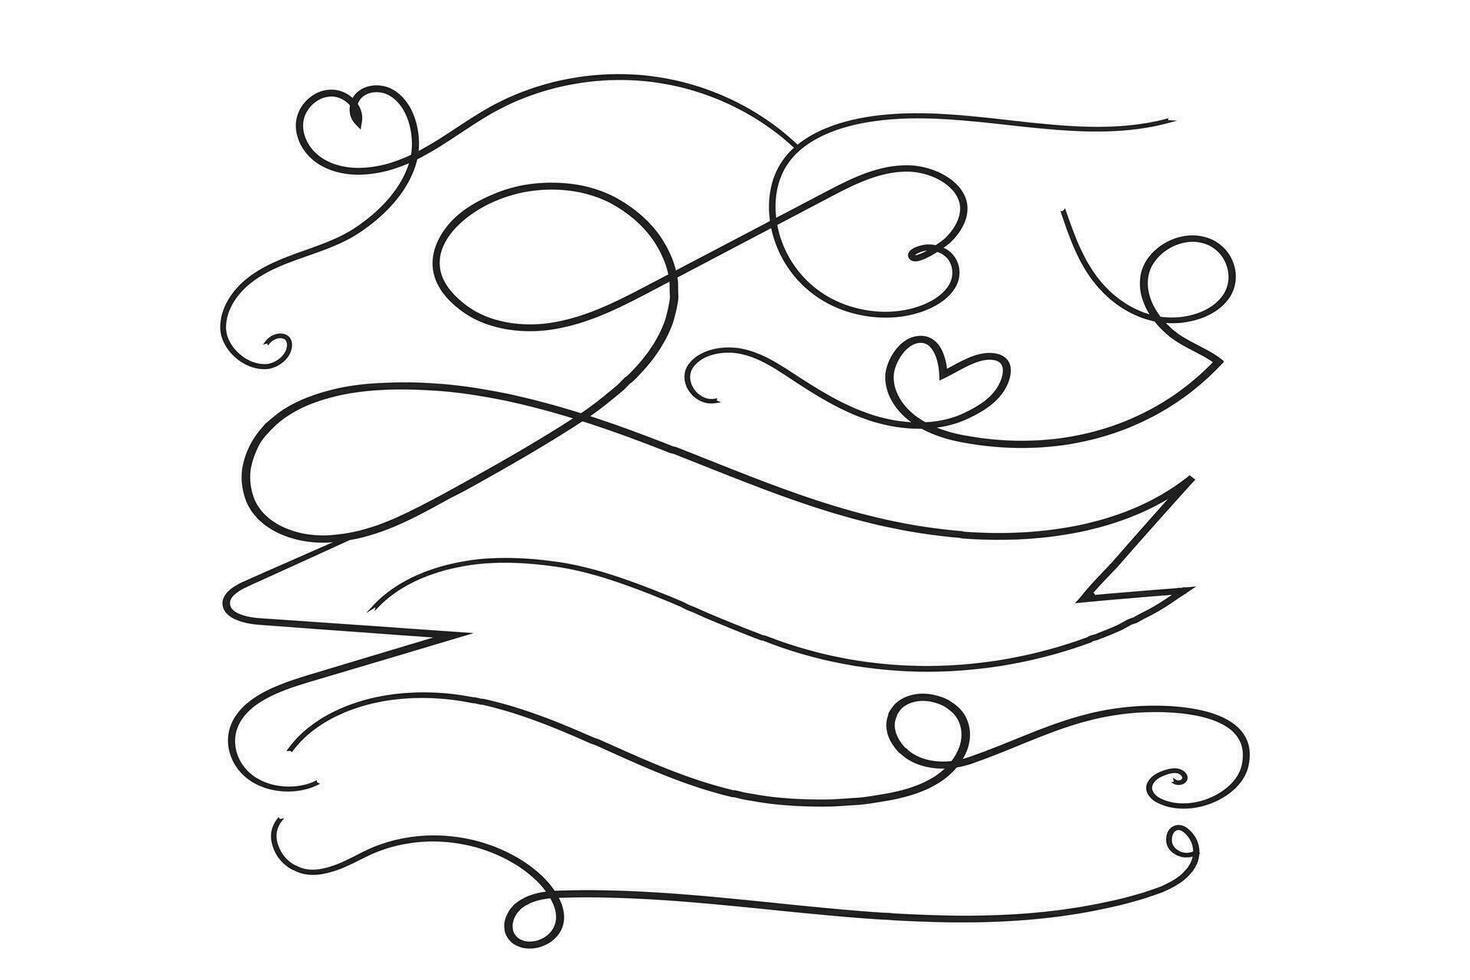 valentines dag lockigt hjärtan stil kalligrafi översikt band, hand teckning calligraphic hjärta band vektor baner, dekorativ hjärtan romantisk kärlek text baner, hjärta skrolla linje översikt band